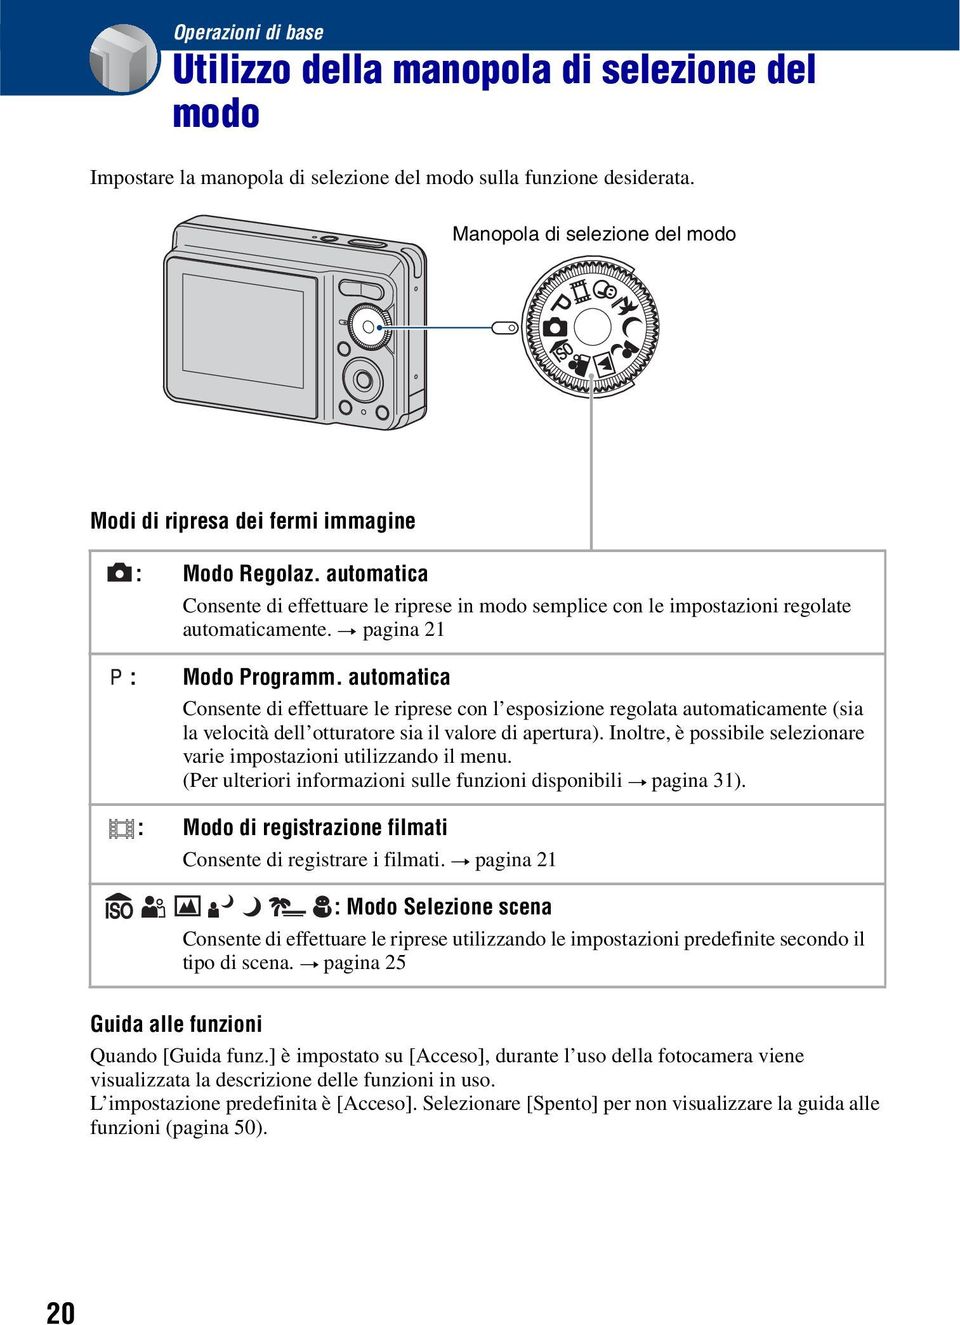 t pagina 21 : Modo Programm. automatica Consente di effettuare le riprese con l esposizione regolata automaticamente (sia la velocità dell otturatore sia il valore di apertura).